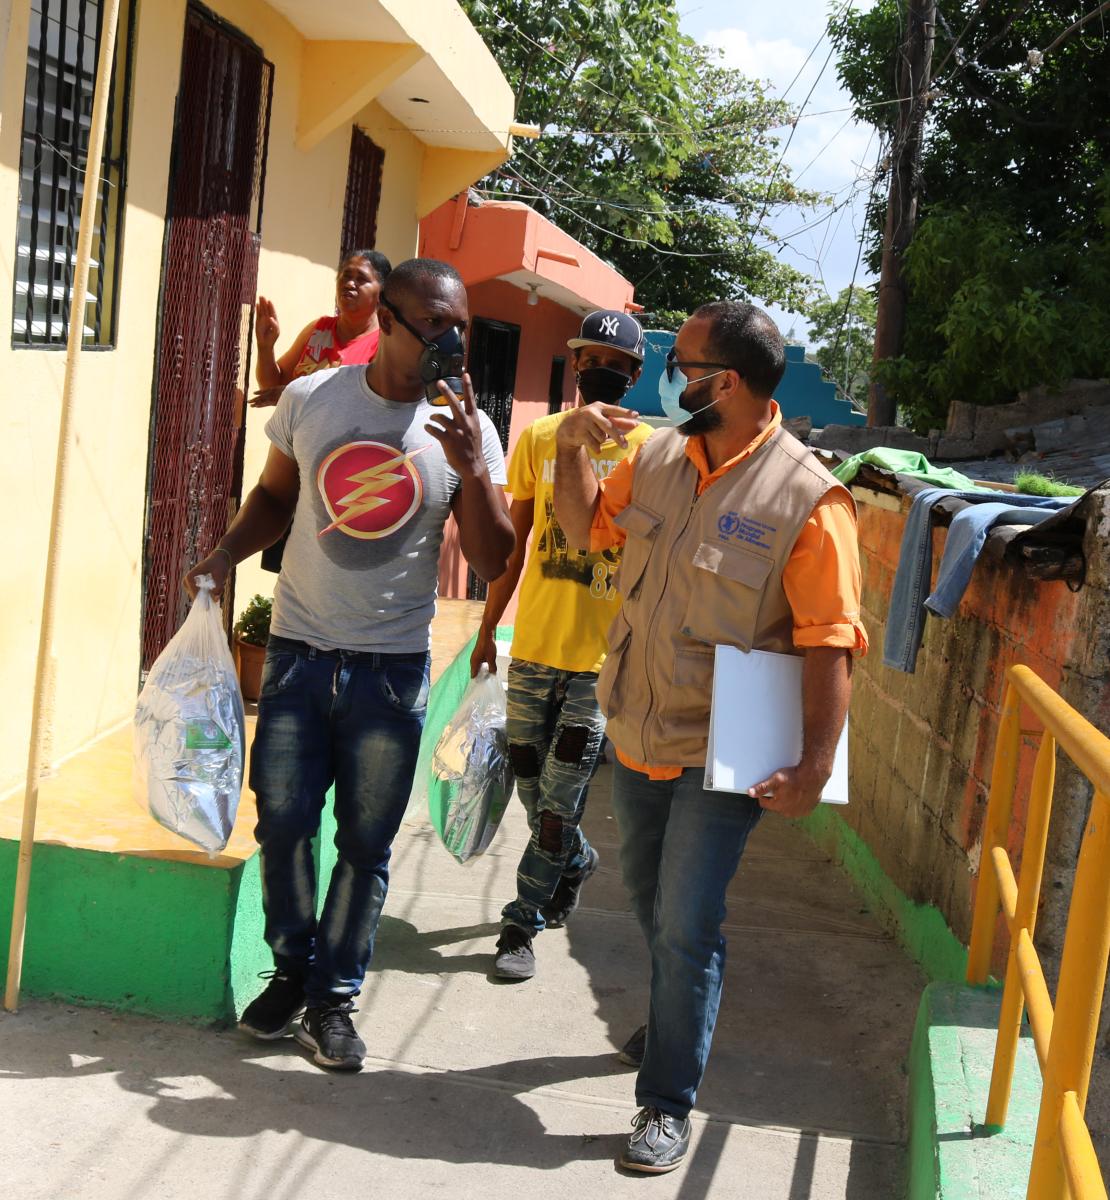 Residentes de la zona y personal de la ONU pasan frente a las casas de un barrio de la República Dominicana. Llevan una máscara protectora y conversan entre ellos mientras avanzan juntos.